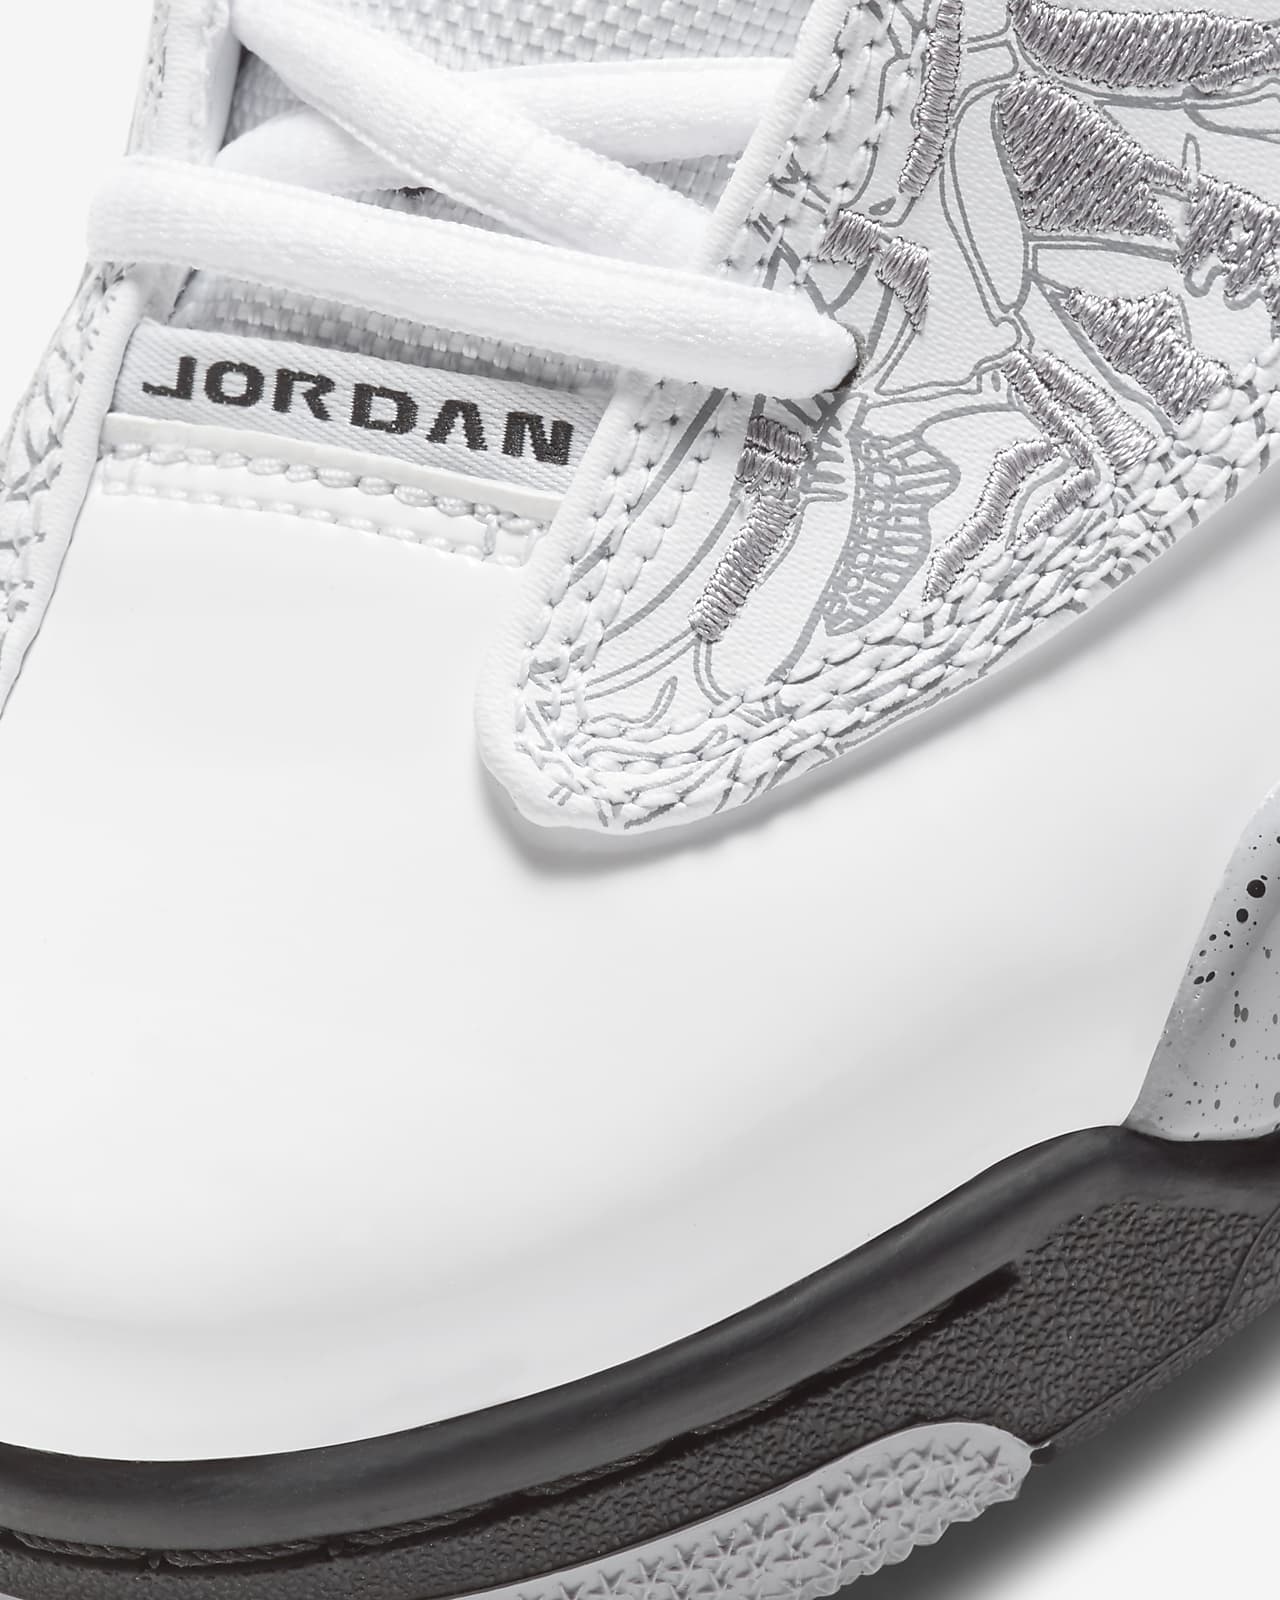 jordans steel toe shoes